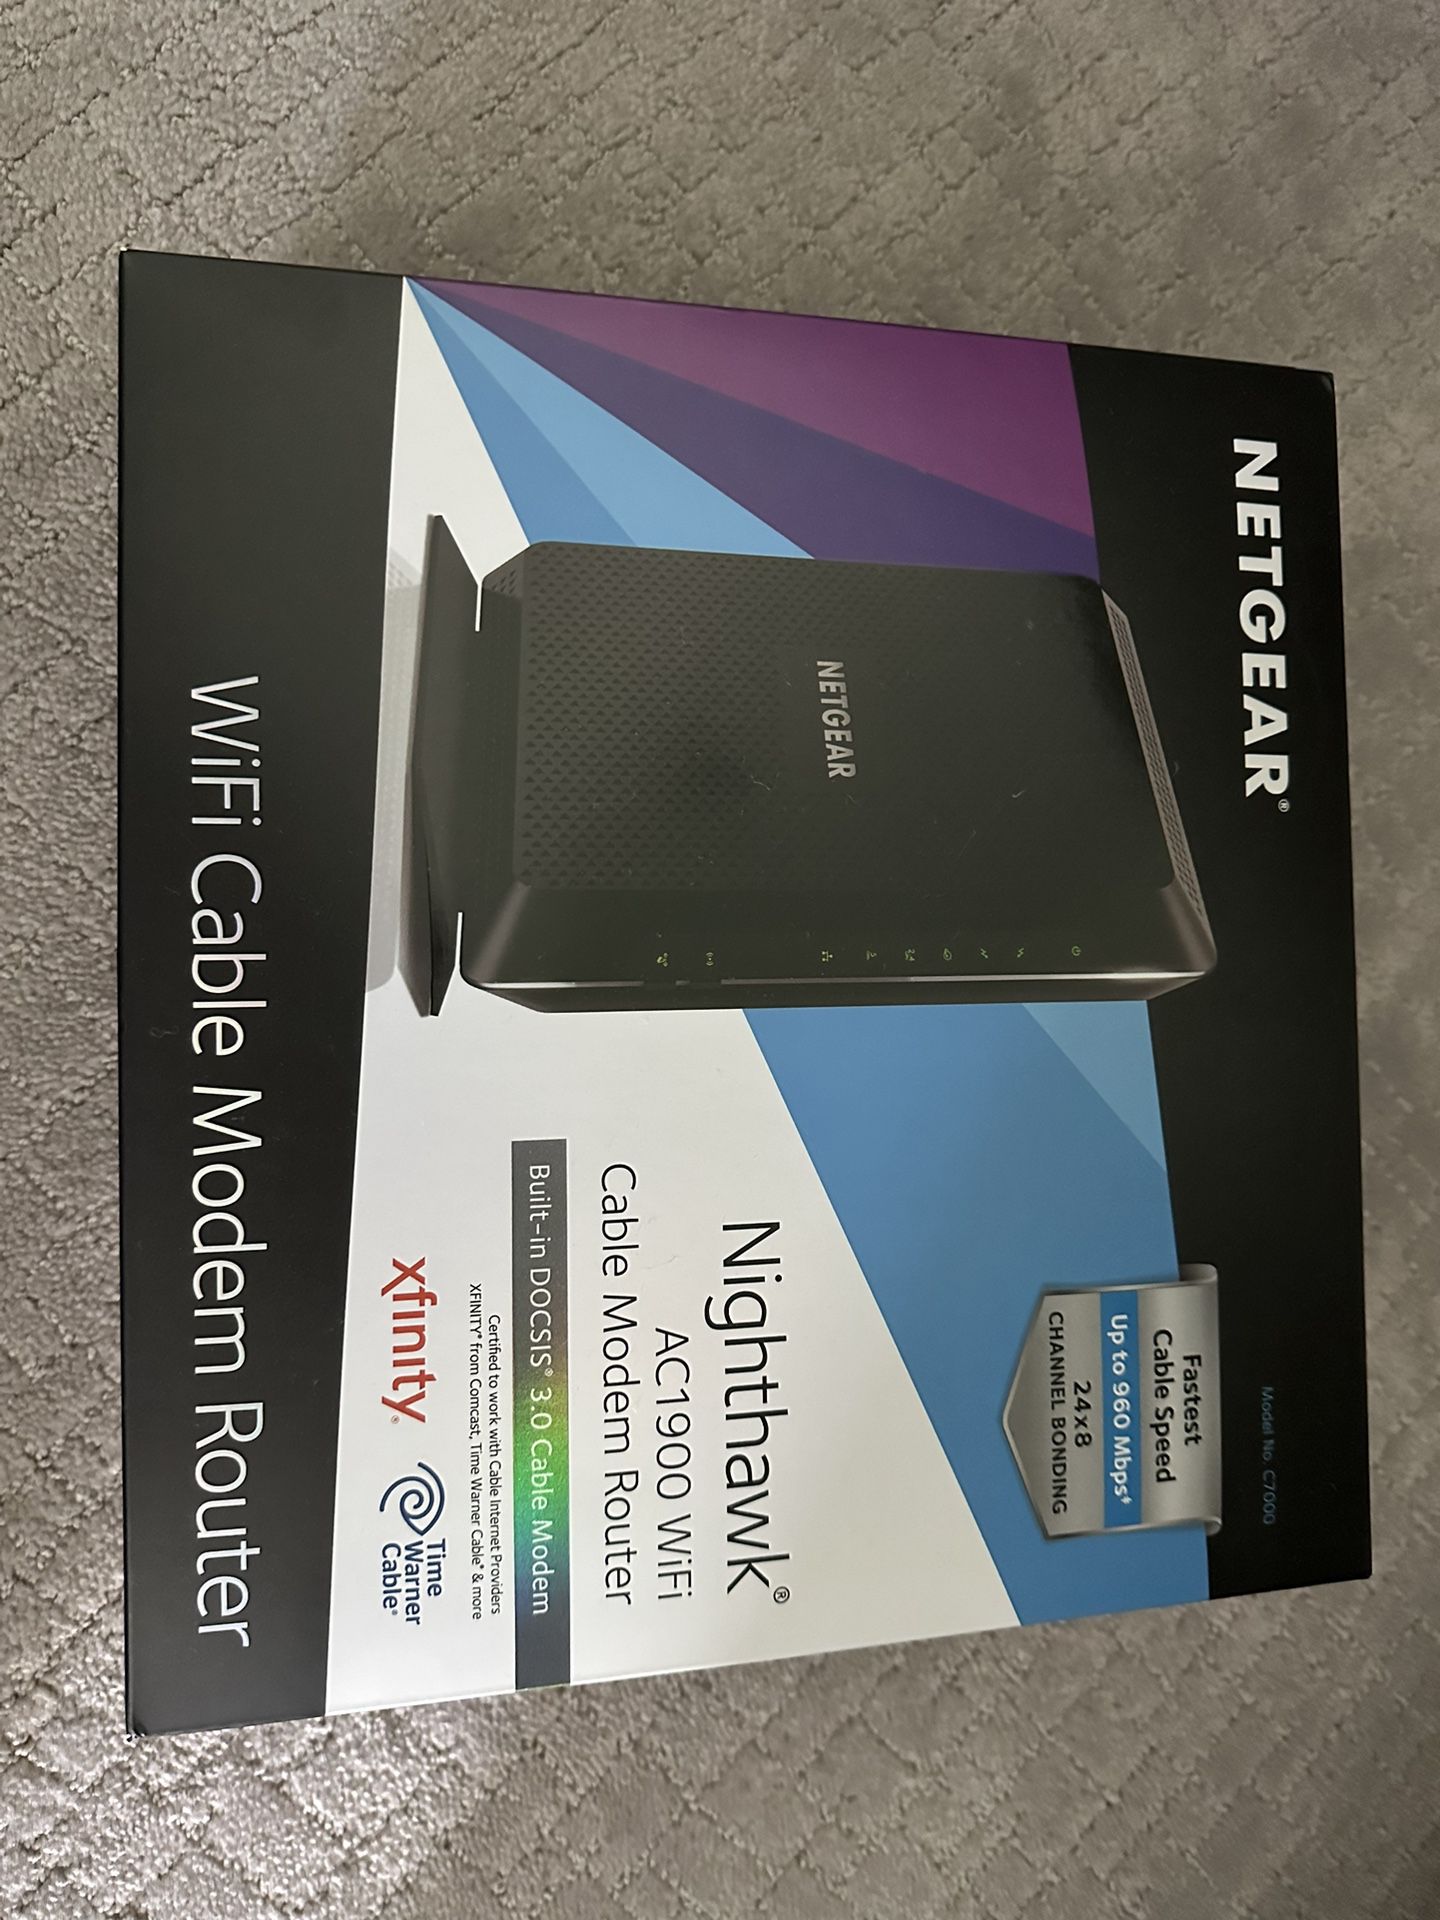 Netgear Nighthawk AC1900 Modem + Router W/ Box